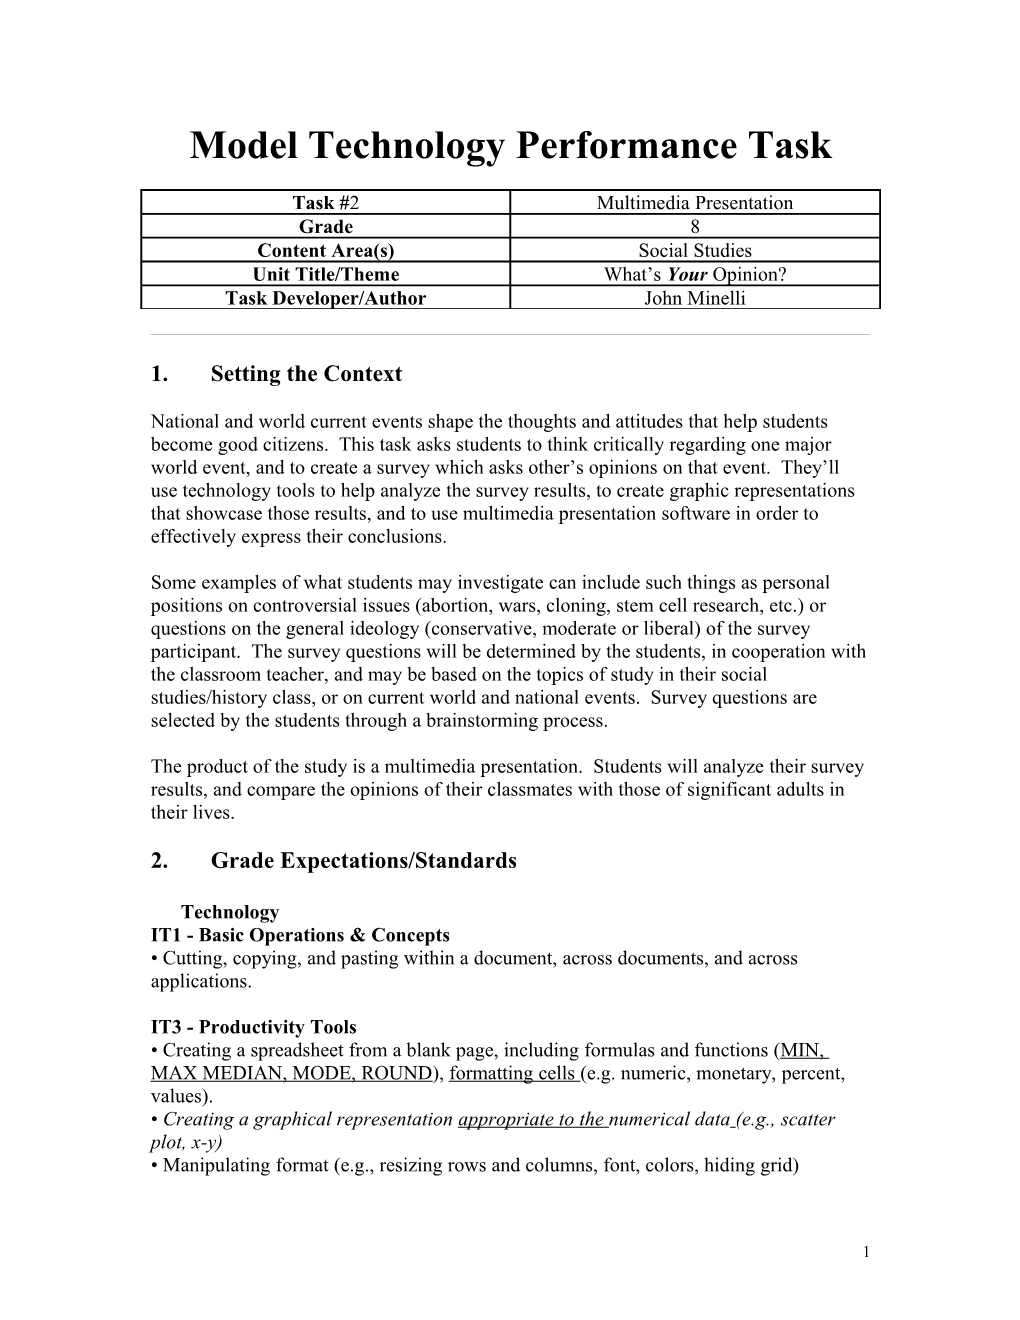 Model Technology Performance Assessment Task Template